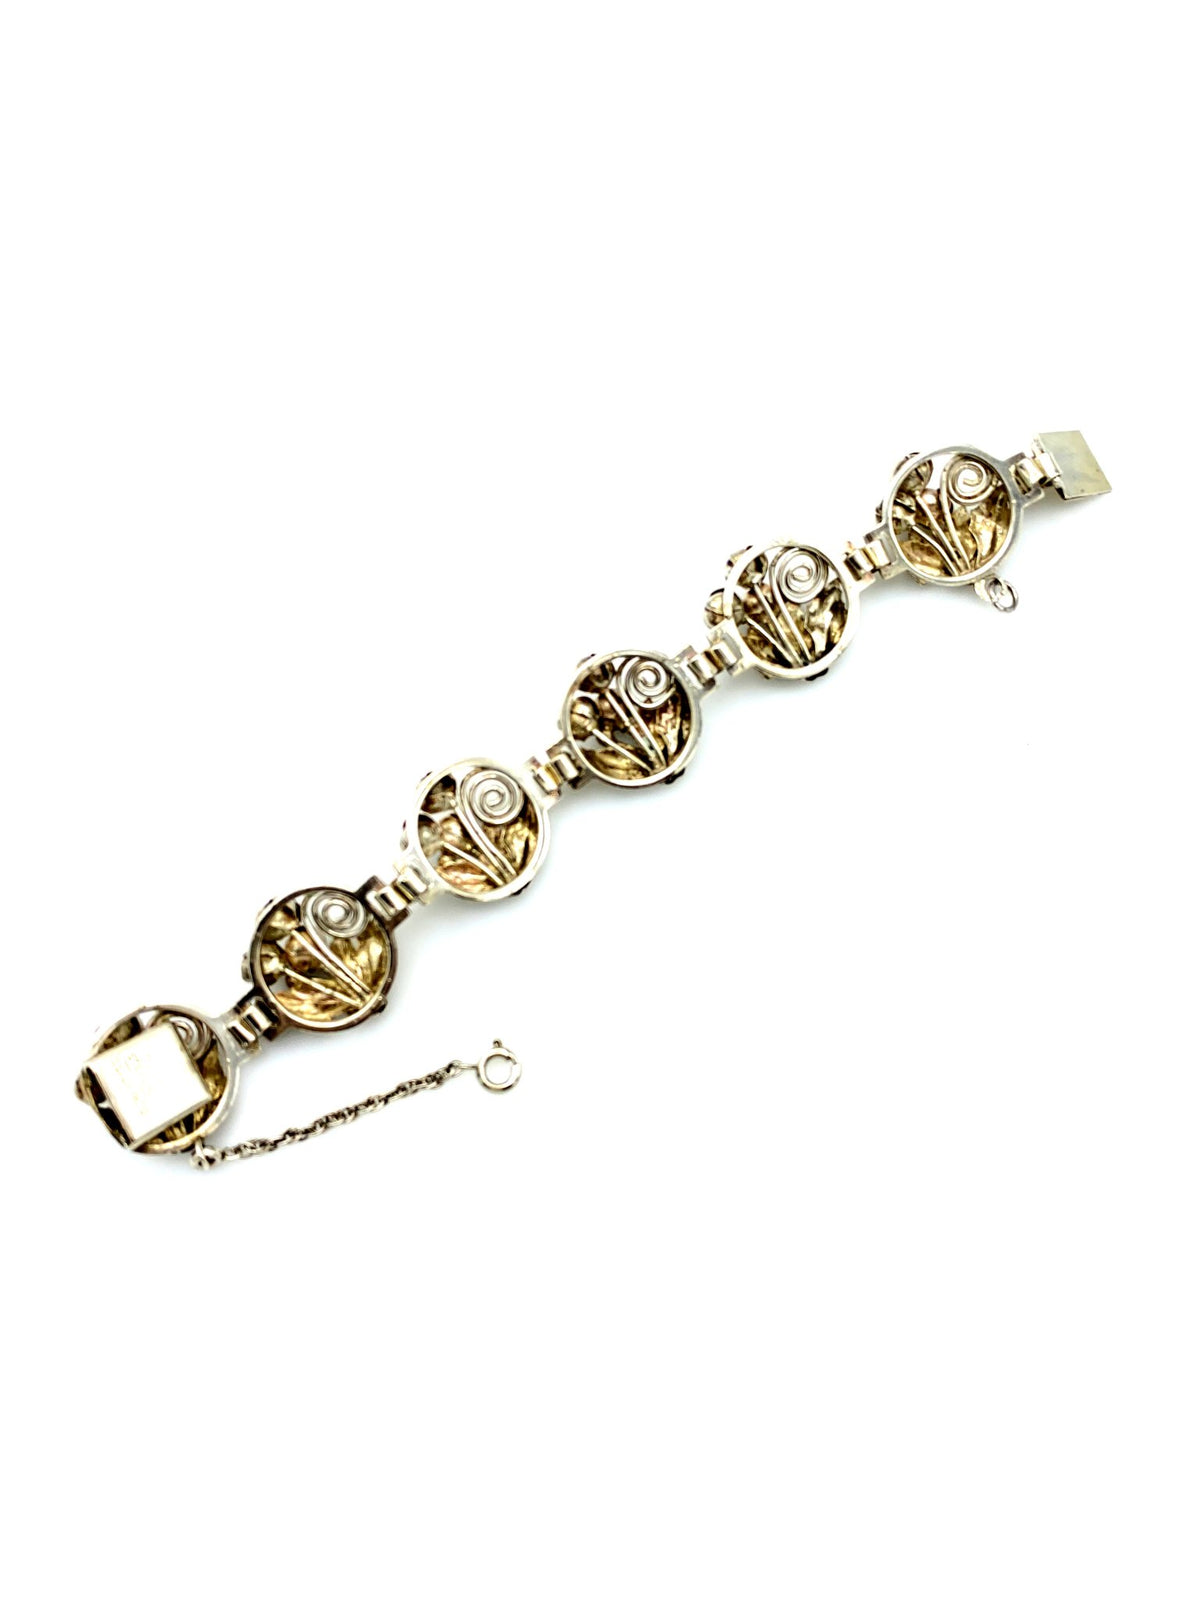 Hobe Sterling Silver Floral Panel Vintage Bracelet - 24 Wishes Vintage Jewelry